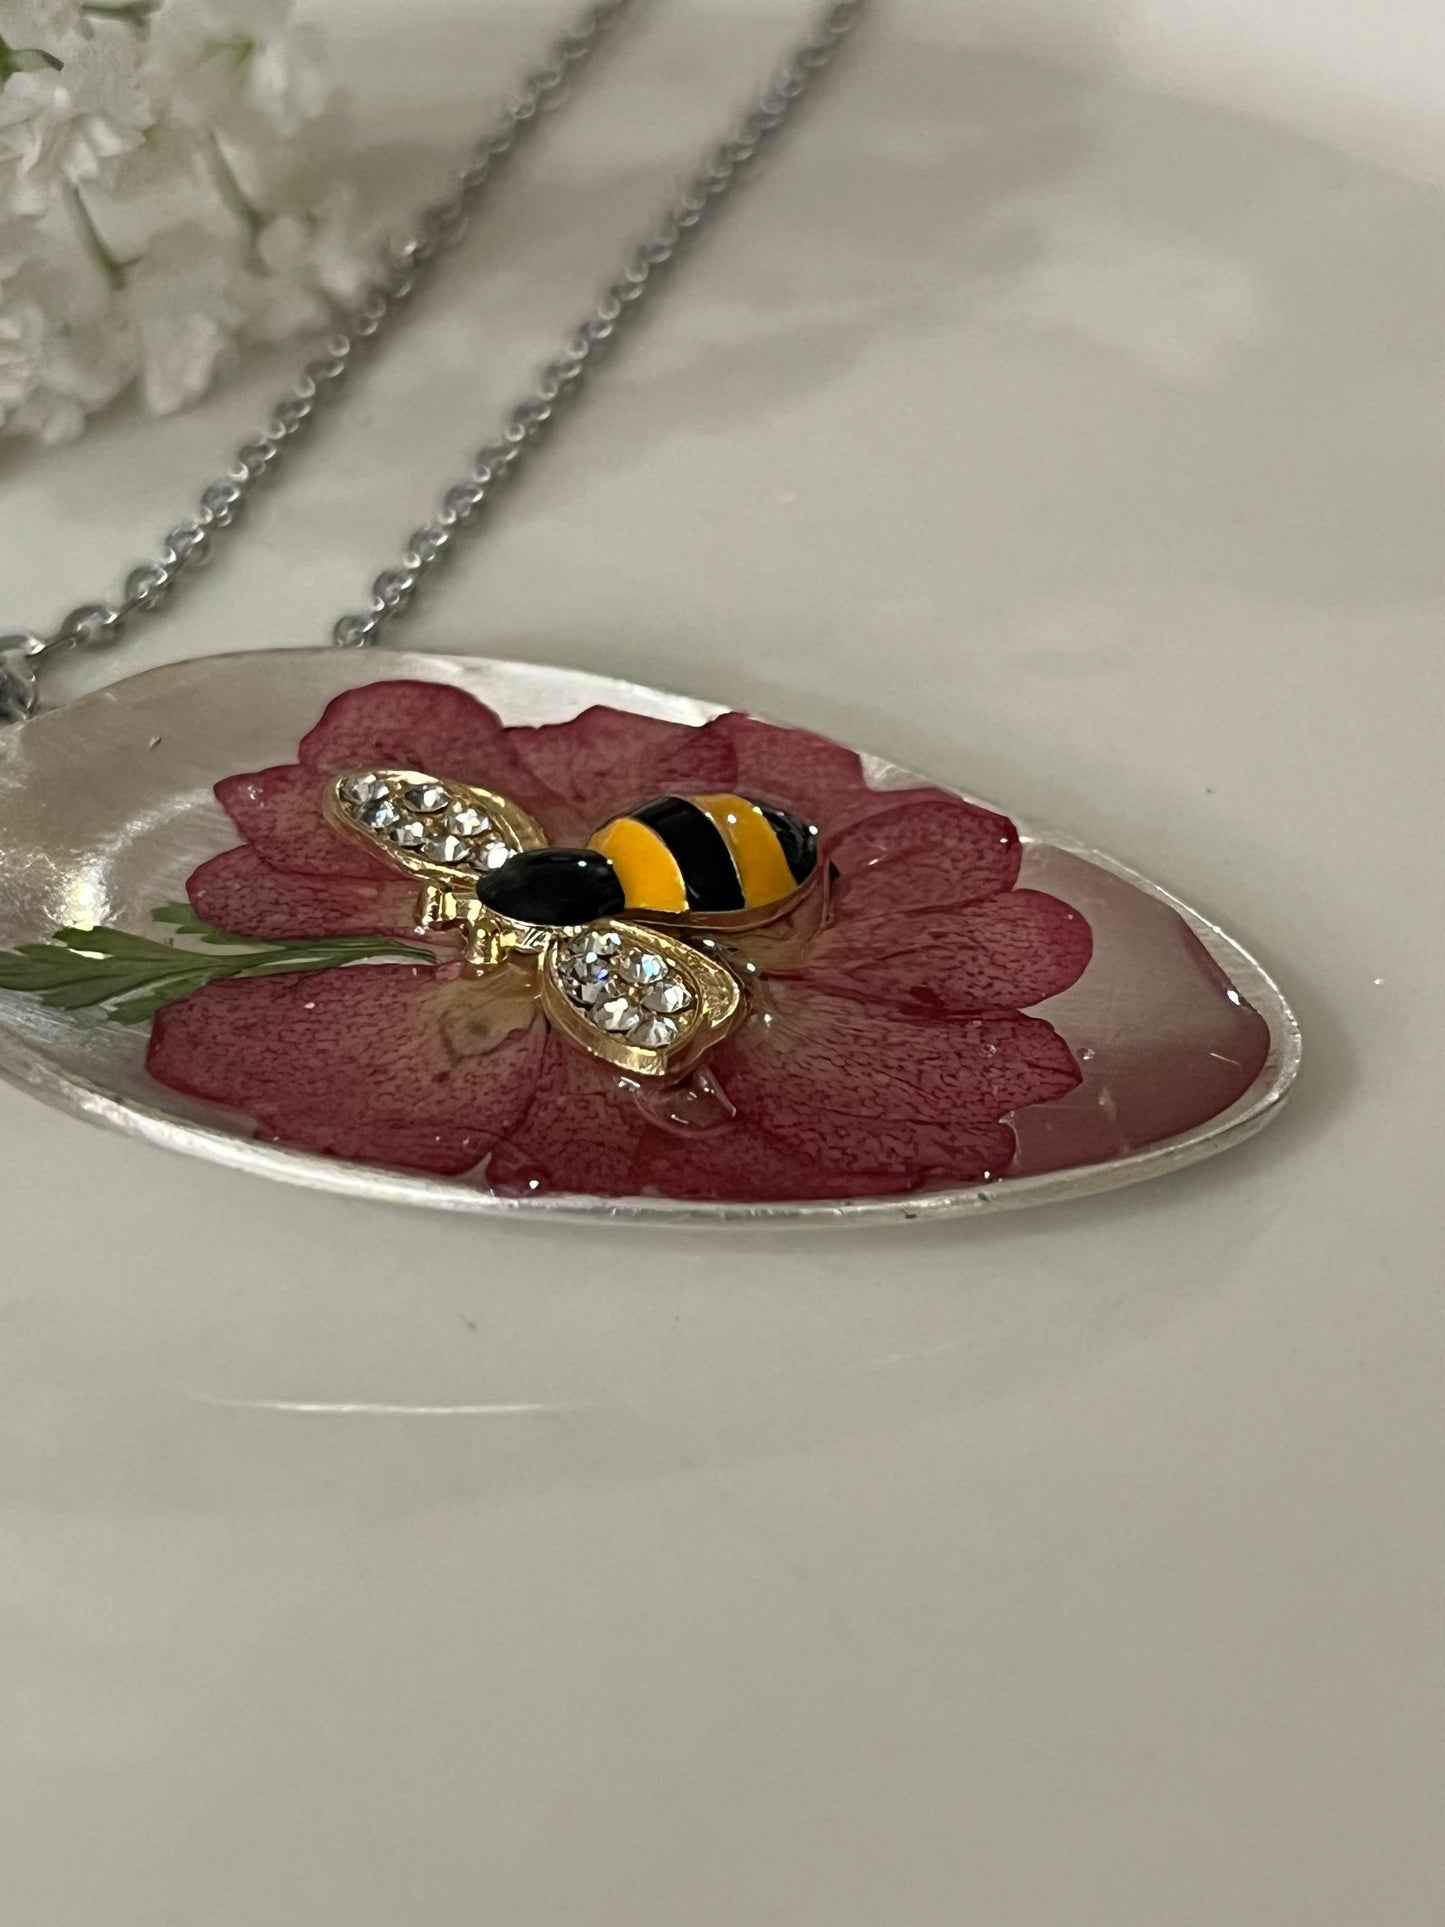 Resin Pendant -light burgundy Flower with Bee